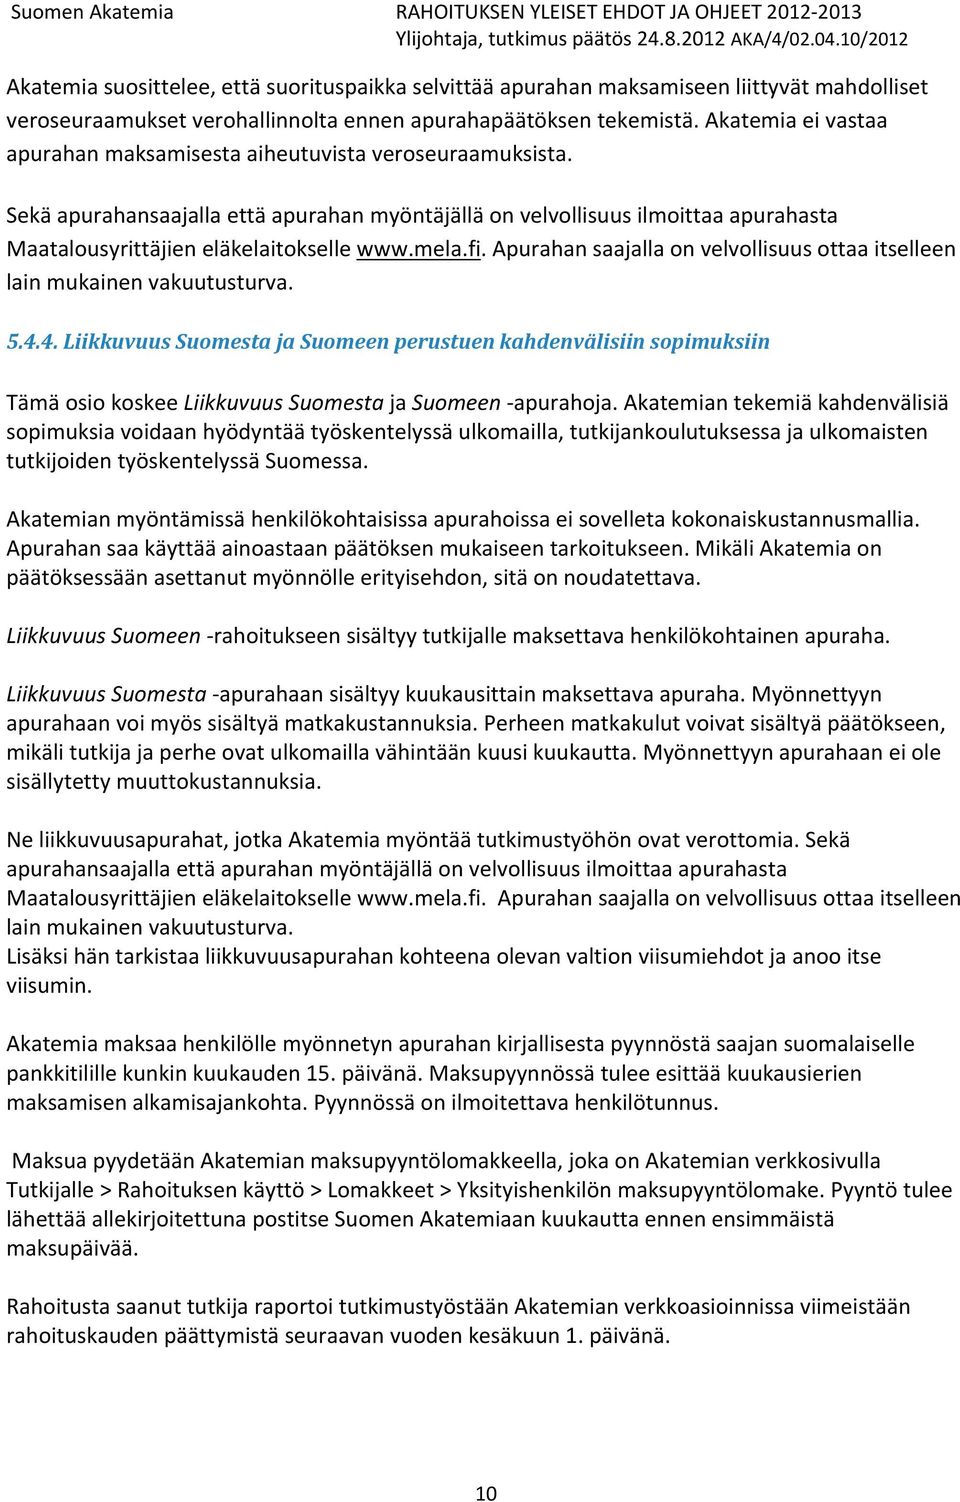 mela.fi. Apurahan saajalla on velvollisuus ottaa itselleen lain mukainen vakuutusturva. 5.4.